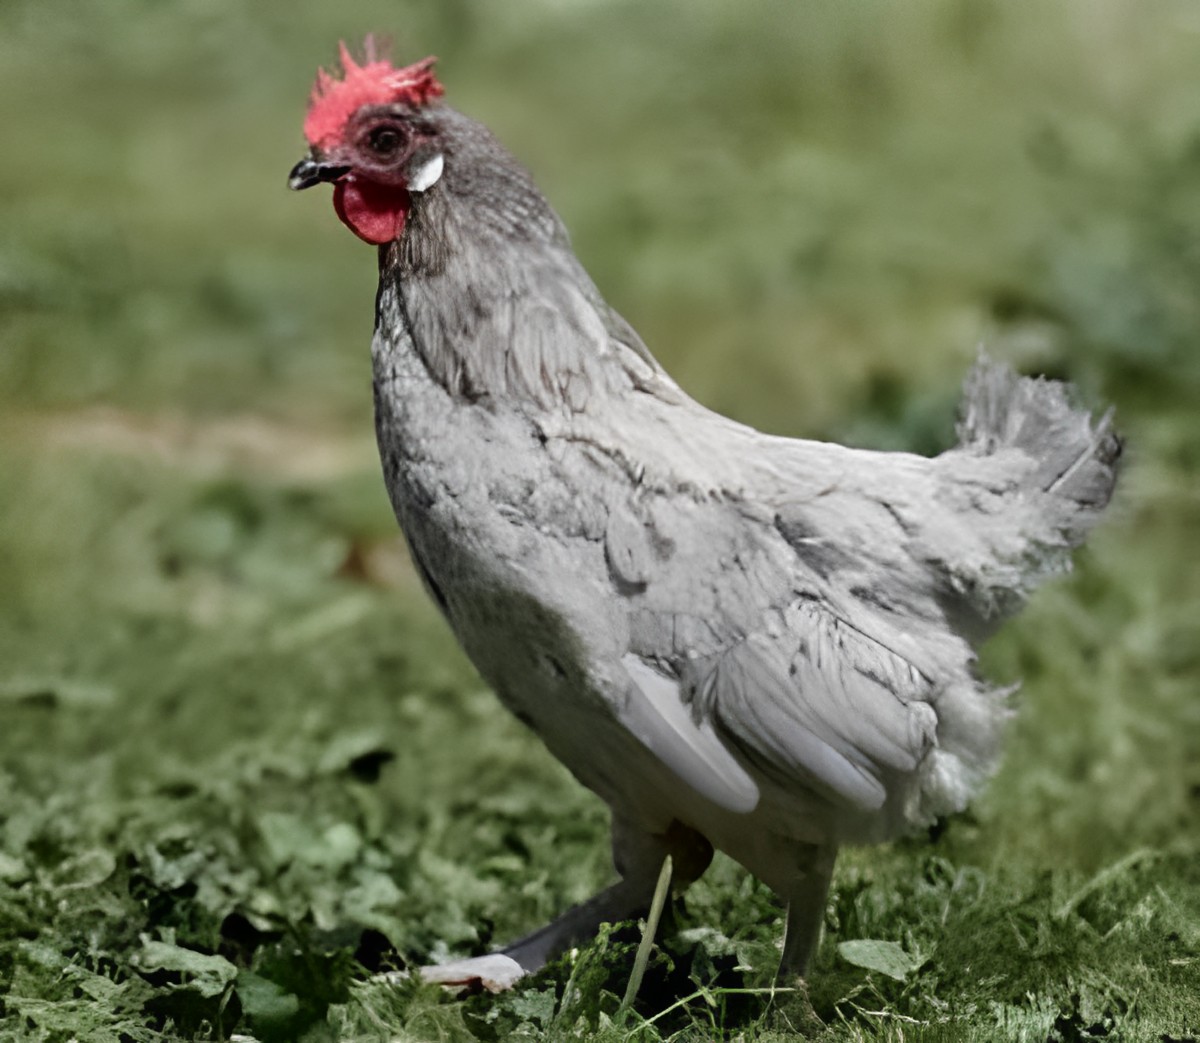 An adorable gray Indio de León hen stands on a green pasture.